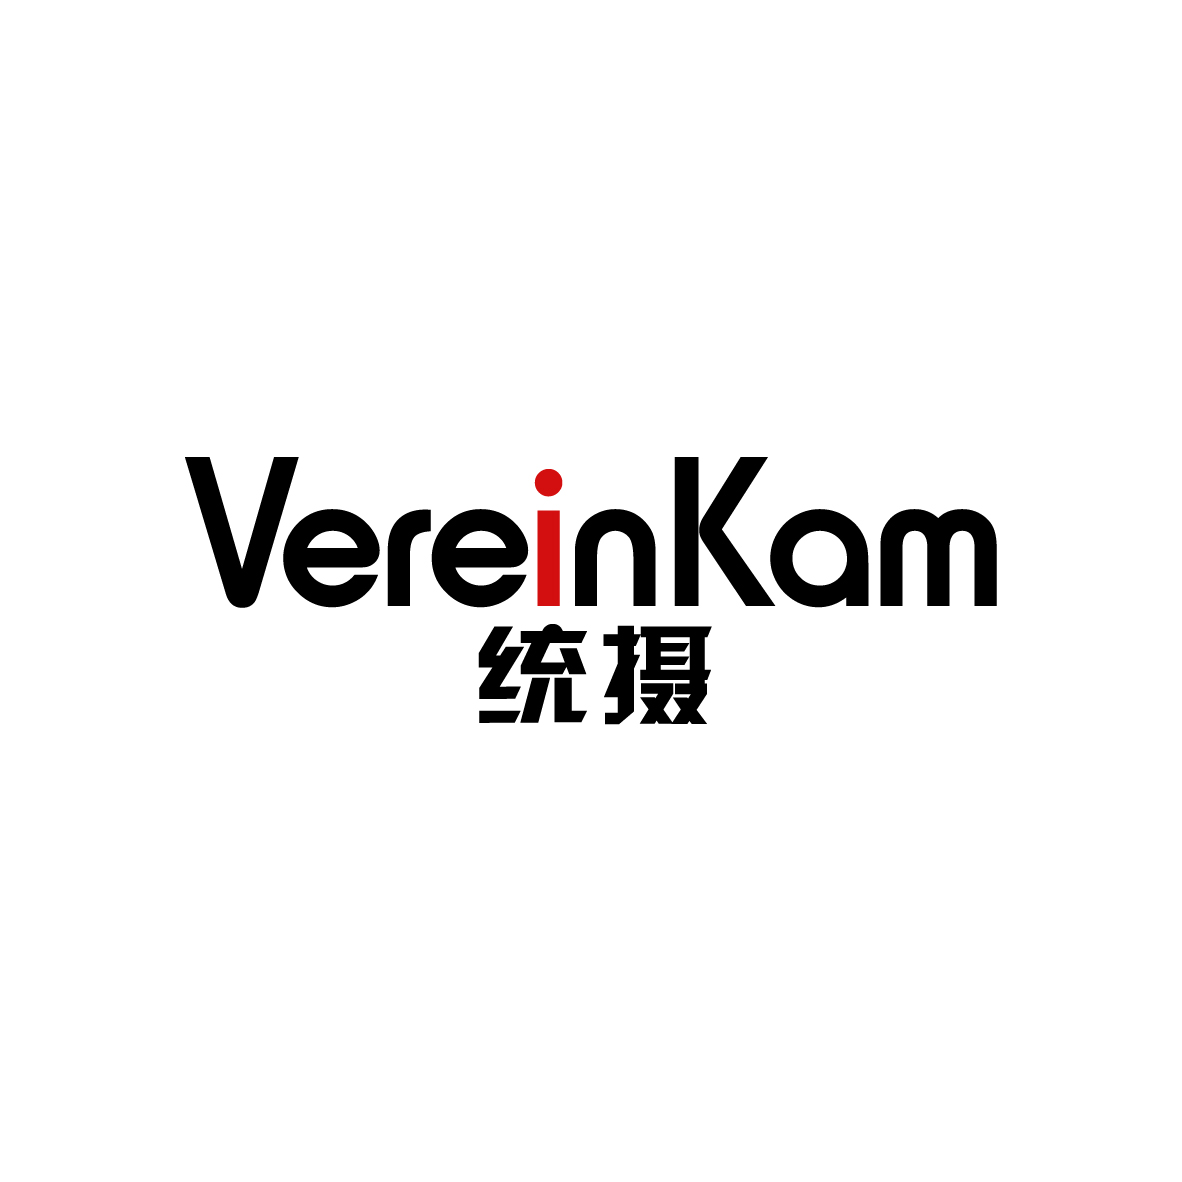 广州市君衍电子商务商行商标统摄 VEREINKAM（09类）多少钱？